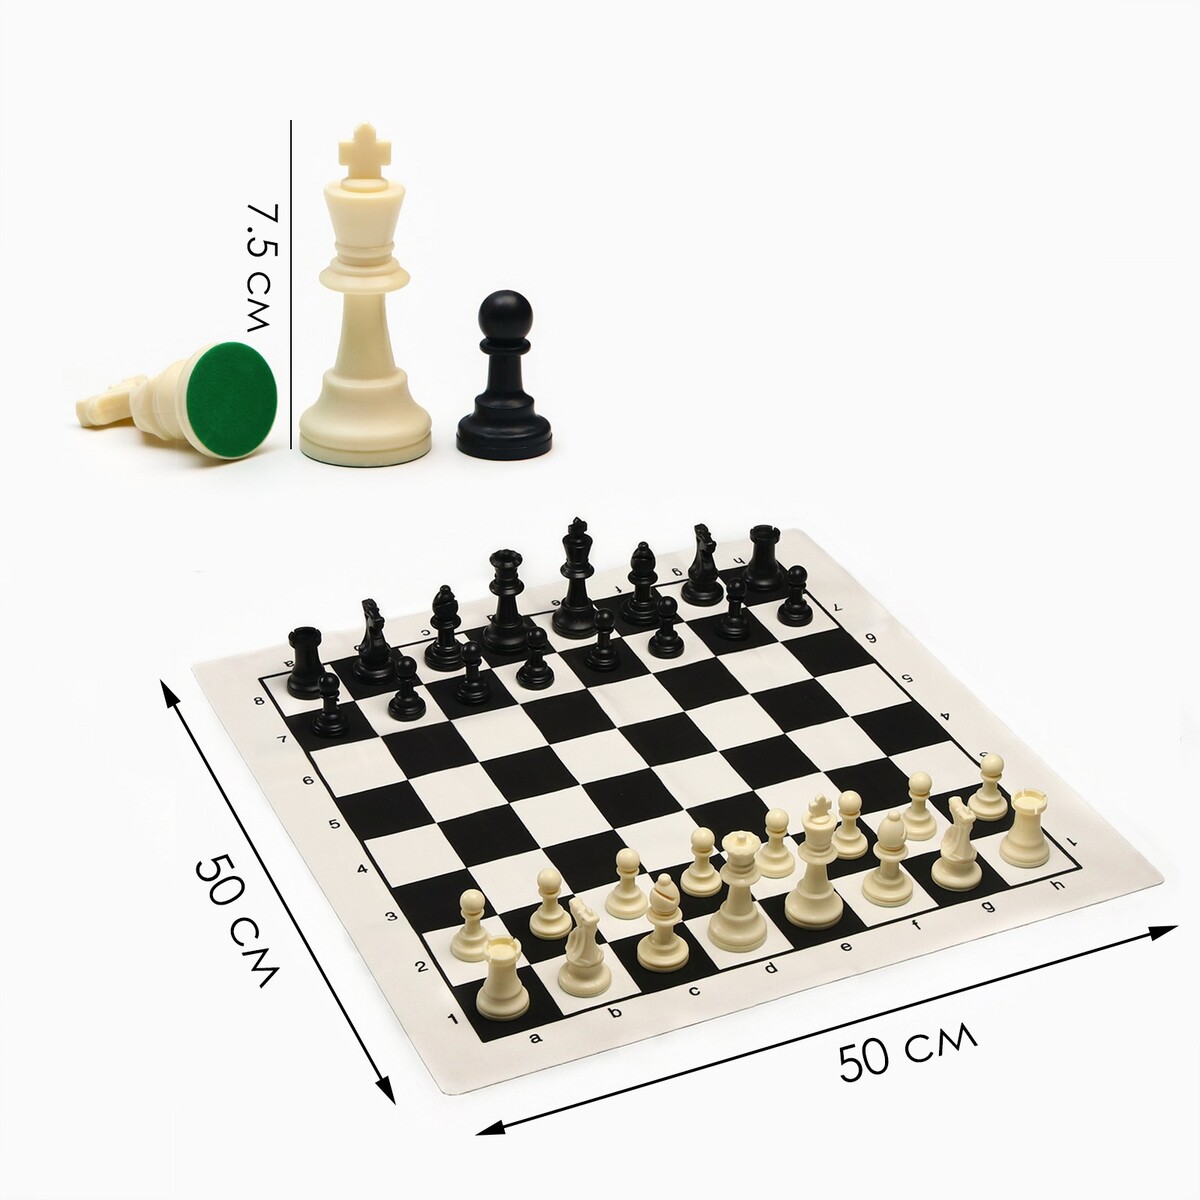 Шахматы в пакете, фигуры (пешка h-4.5 см, ферзь h-7.5 см), поле 50 х 50 см молитва на ржаном поле